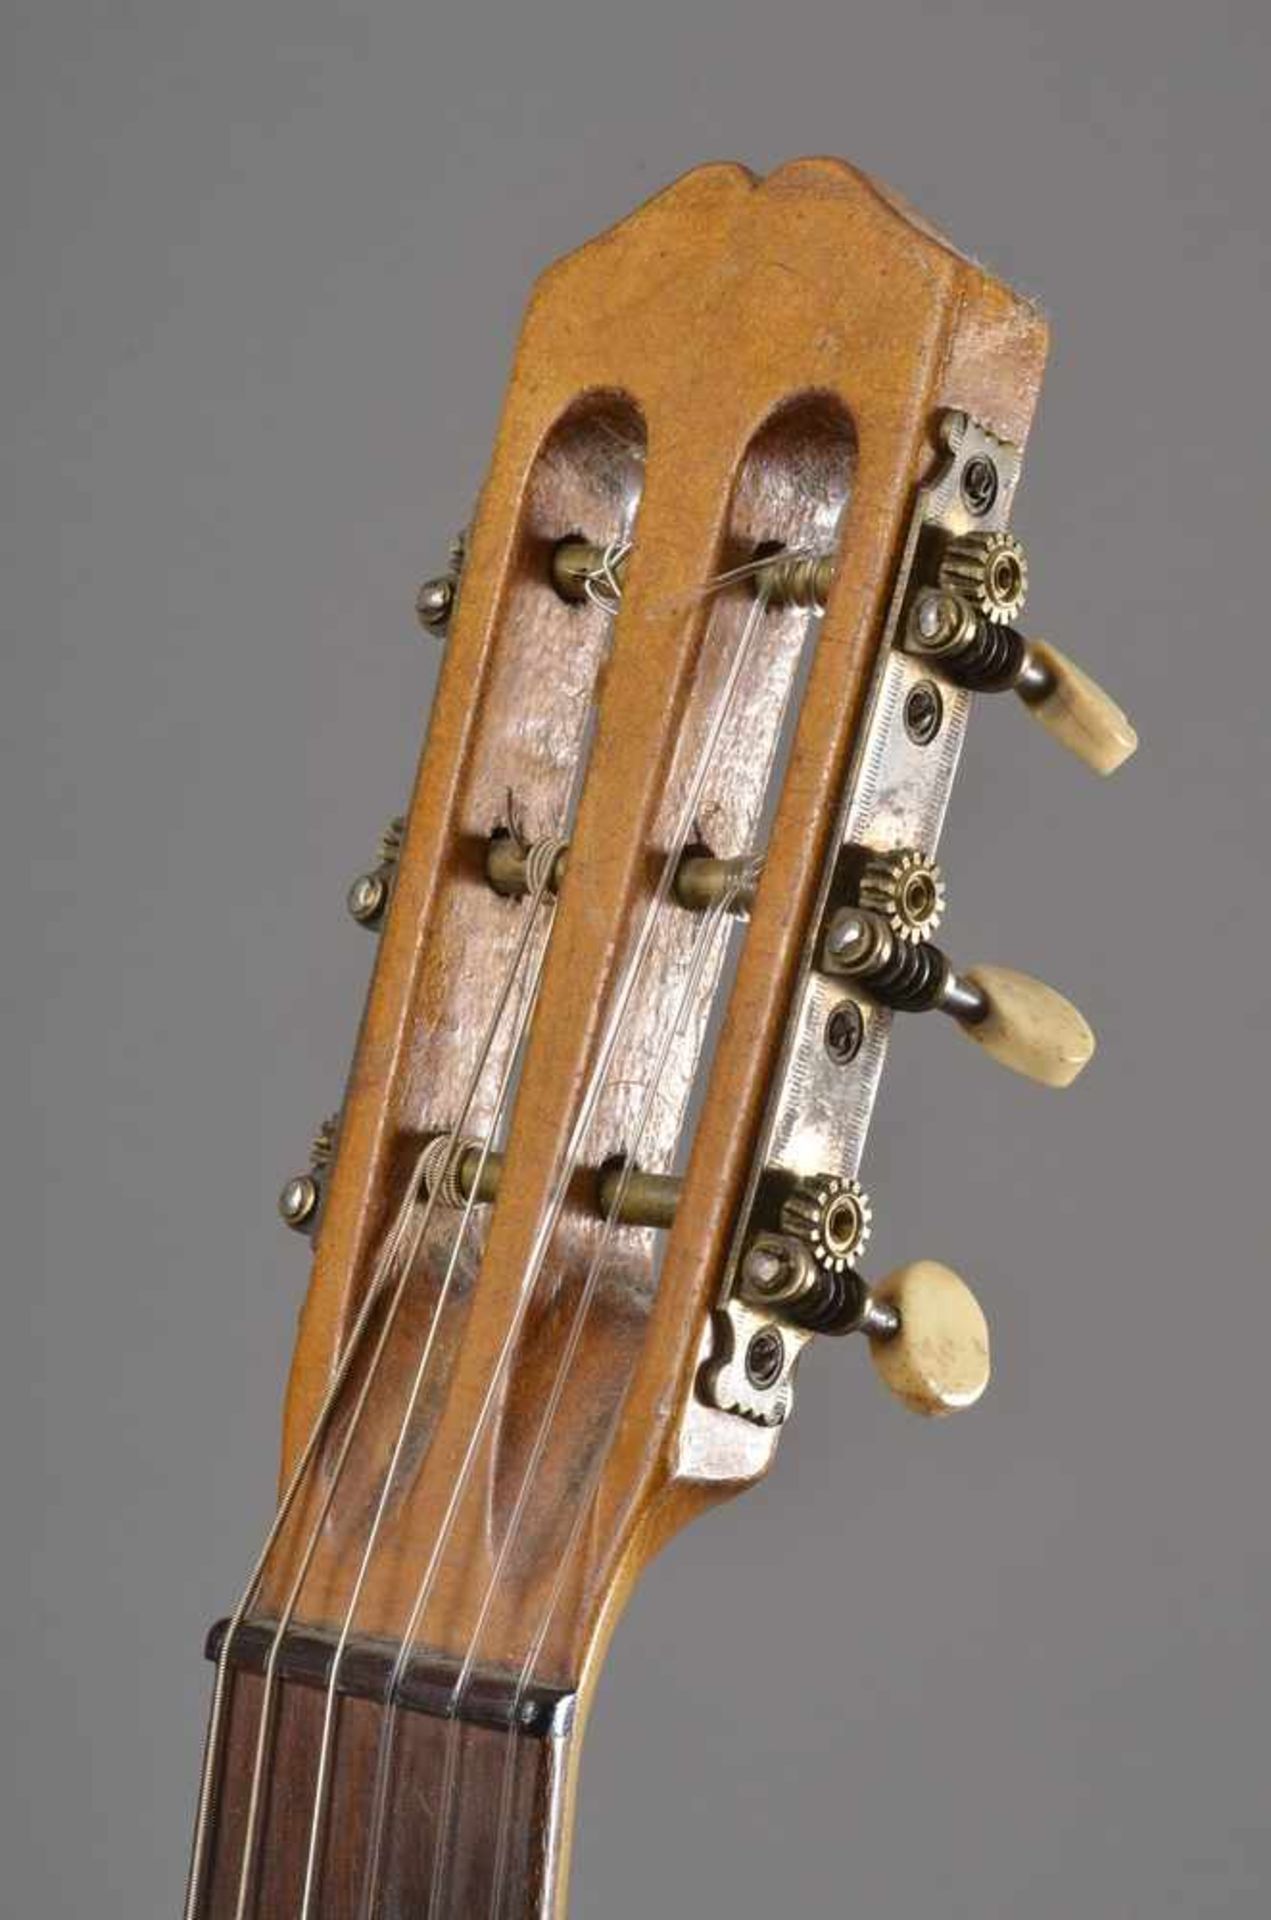 Historische Gitarre, Mensur 62cm, Gesamtlänge 93cm, Saitenhöhe 4mm, ca. 100 Jahre alt, spielbar - Image 5 of 8